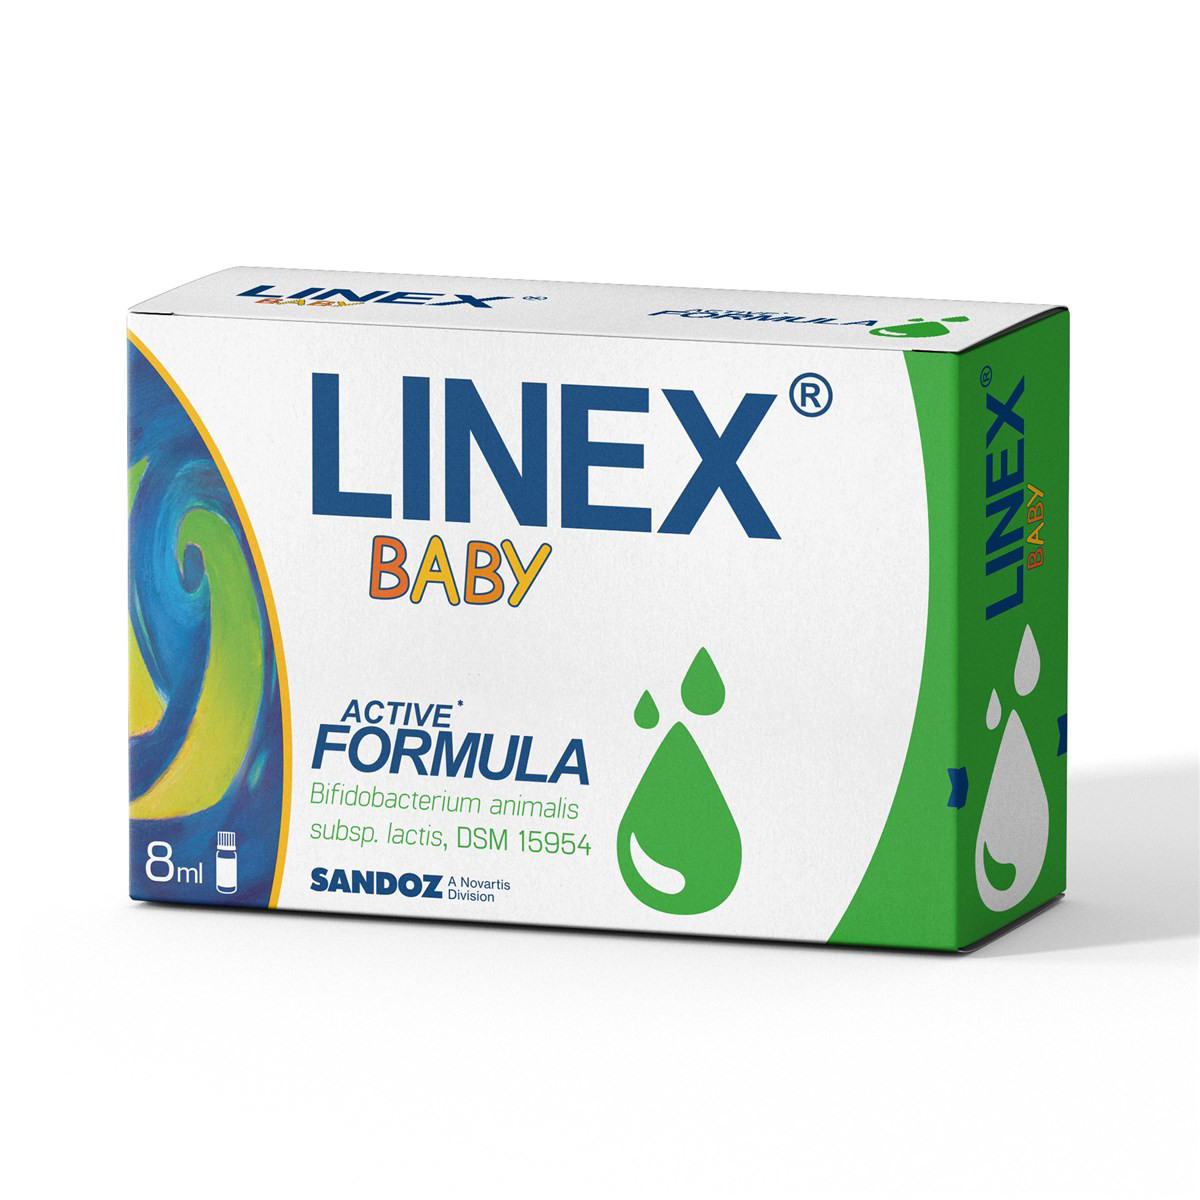 LINEX BABY, lašai, 8 ml